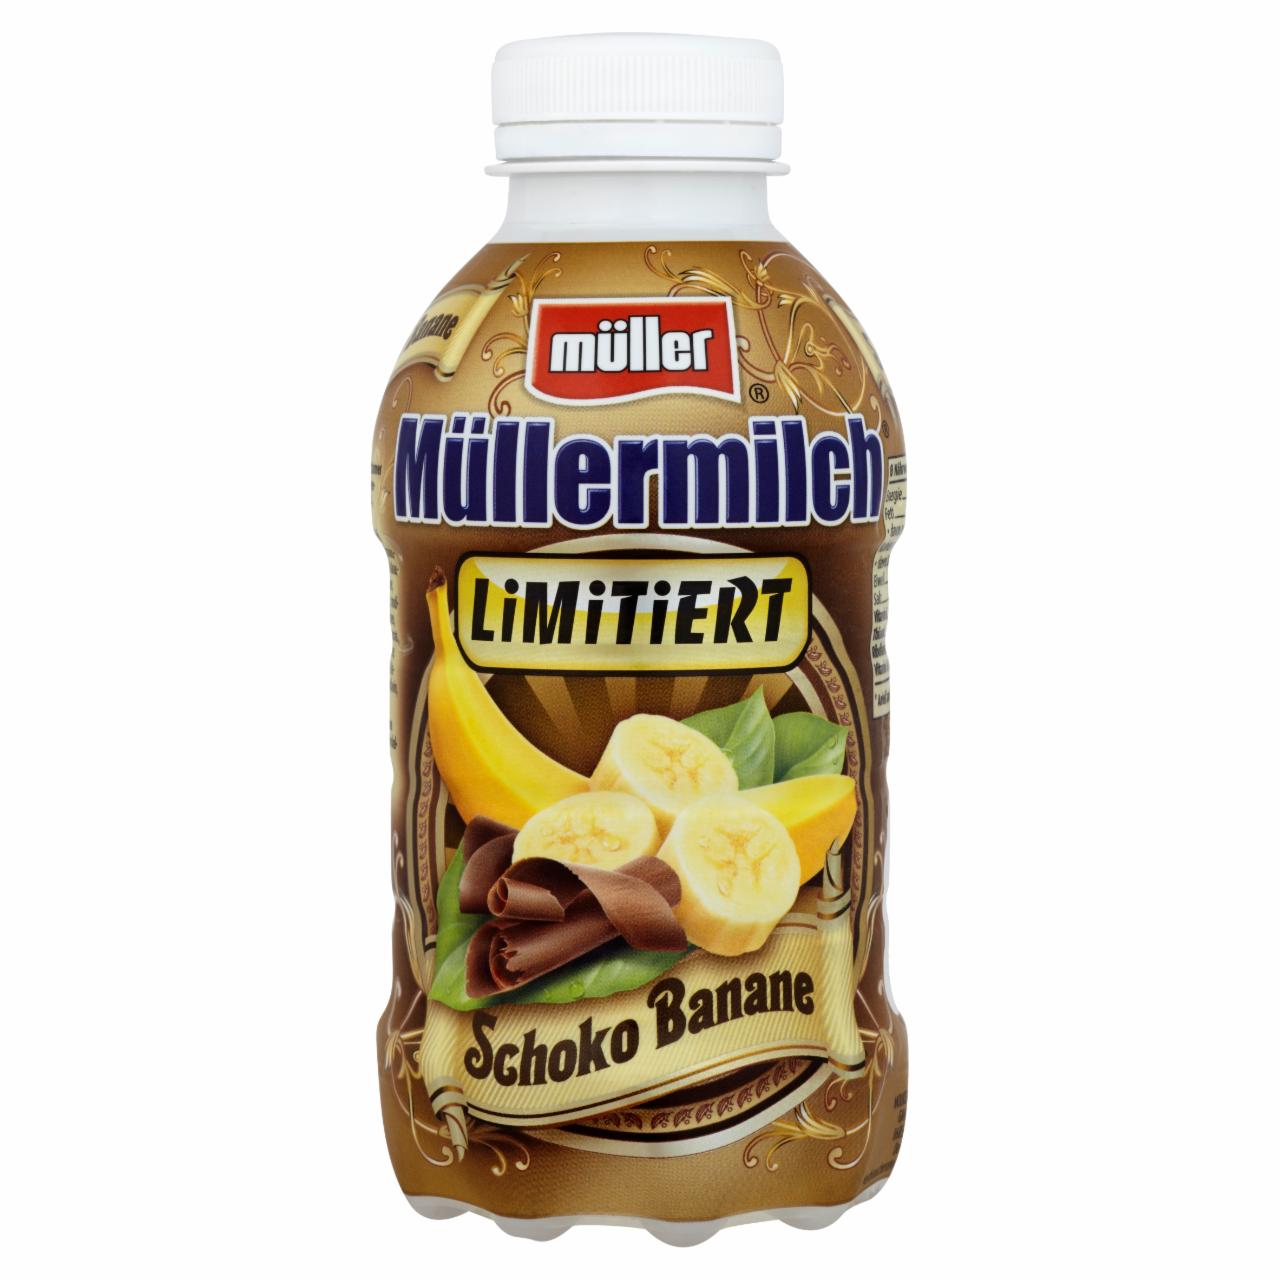 Zdjęcia - Müller Müllermilch czekolada banan Napój mleczny 400 ml